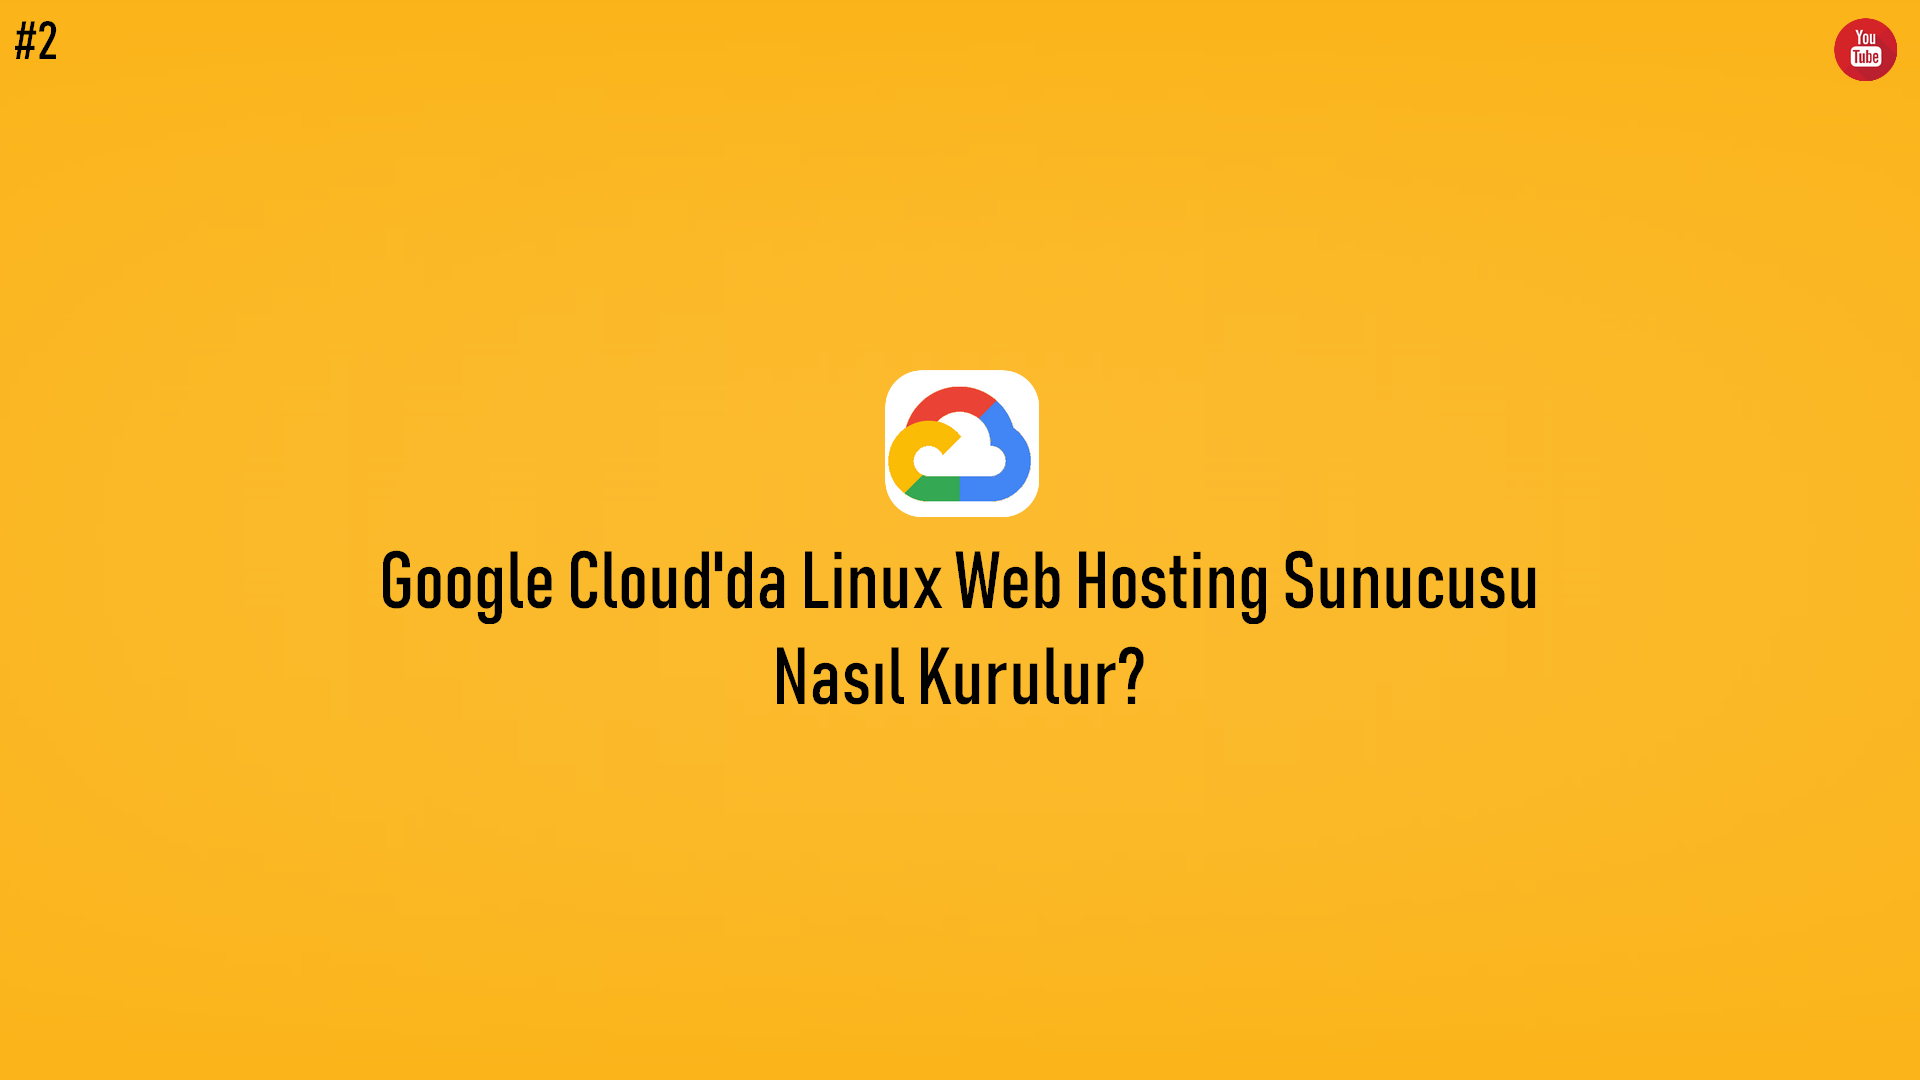 Google Cloud'da Linux Web Hosting Sunucusu Nasıl Kurulur? (Video İçerik) başlıklı içeriğin kapak resmi.